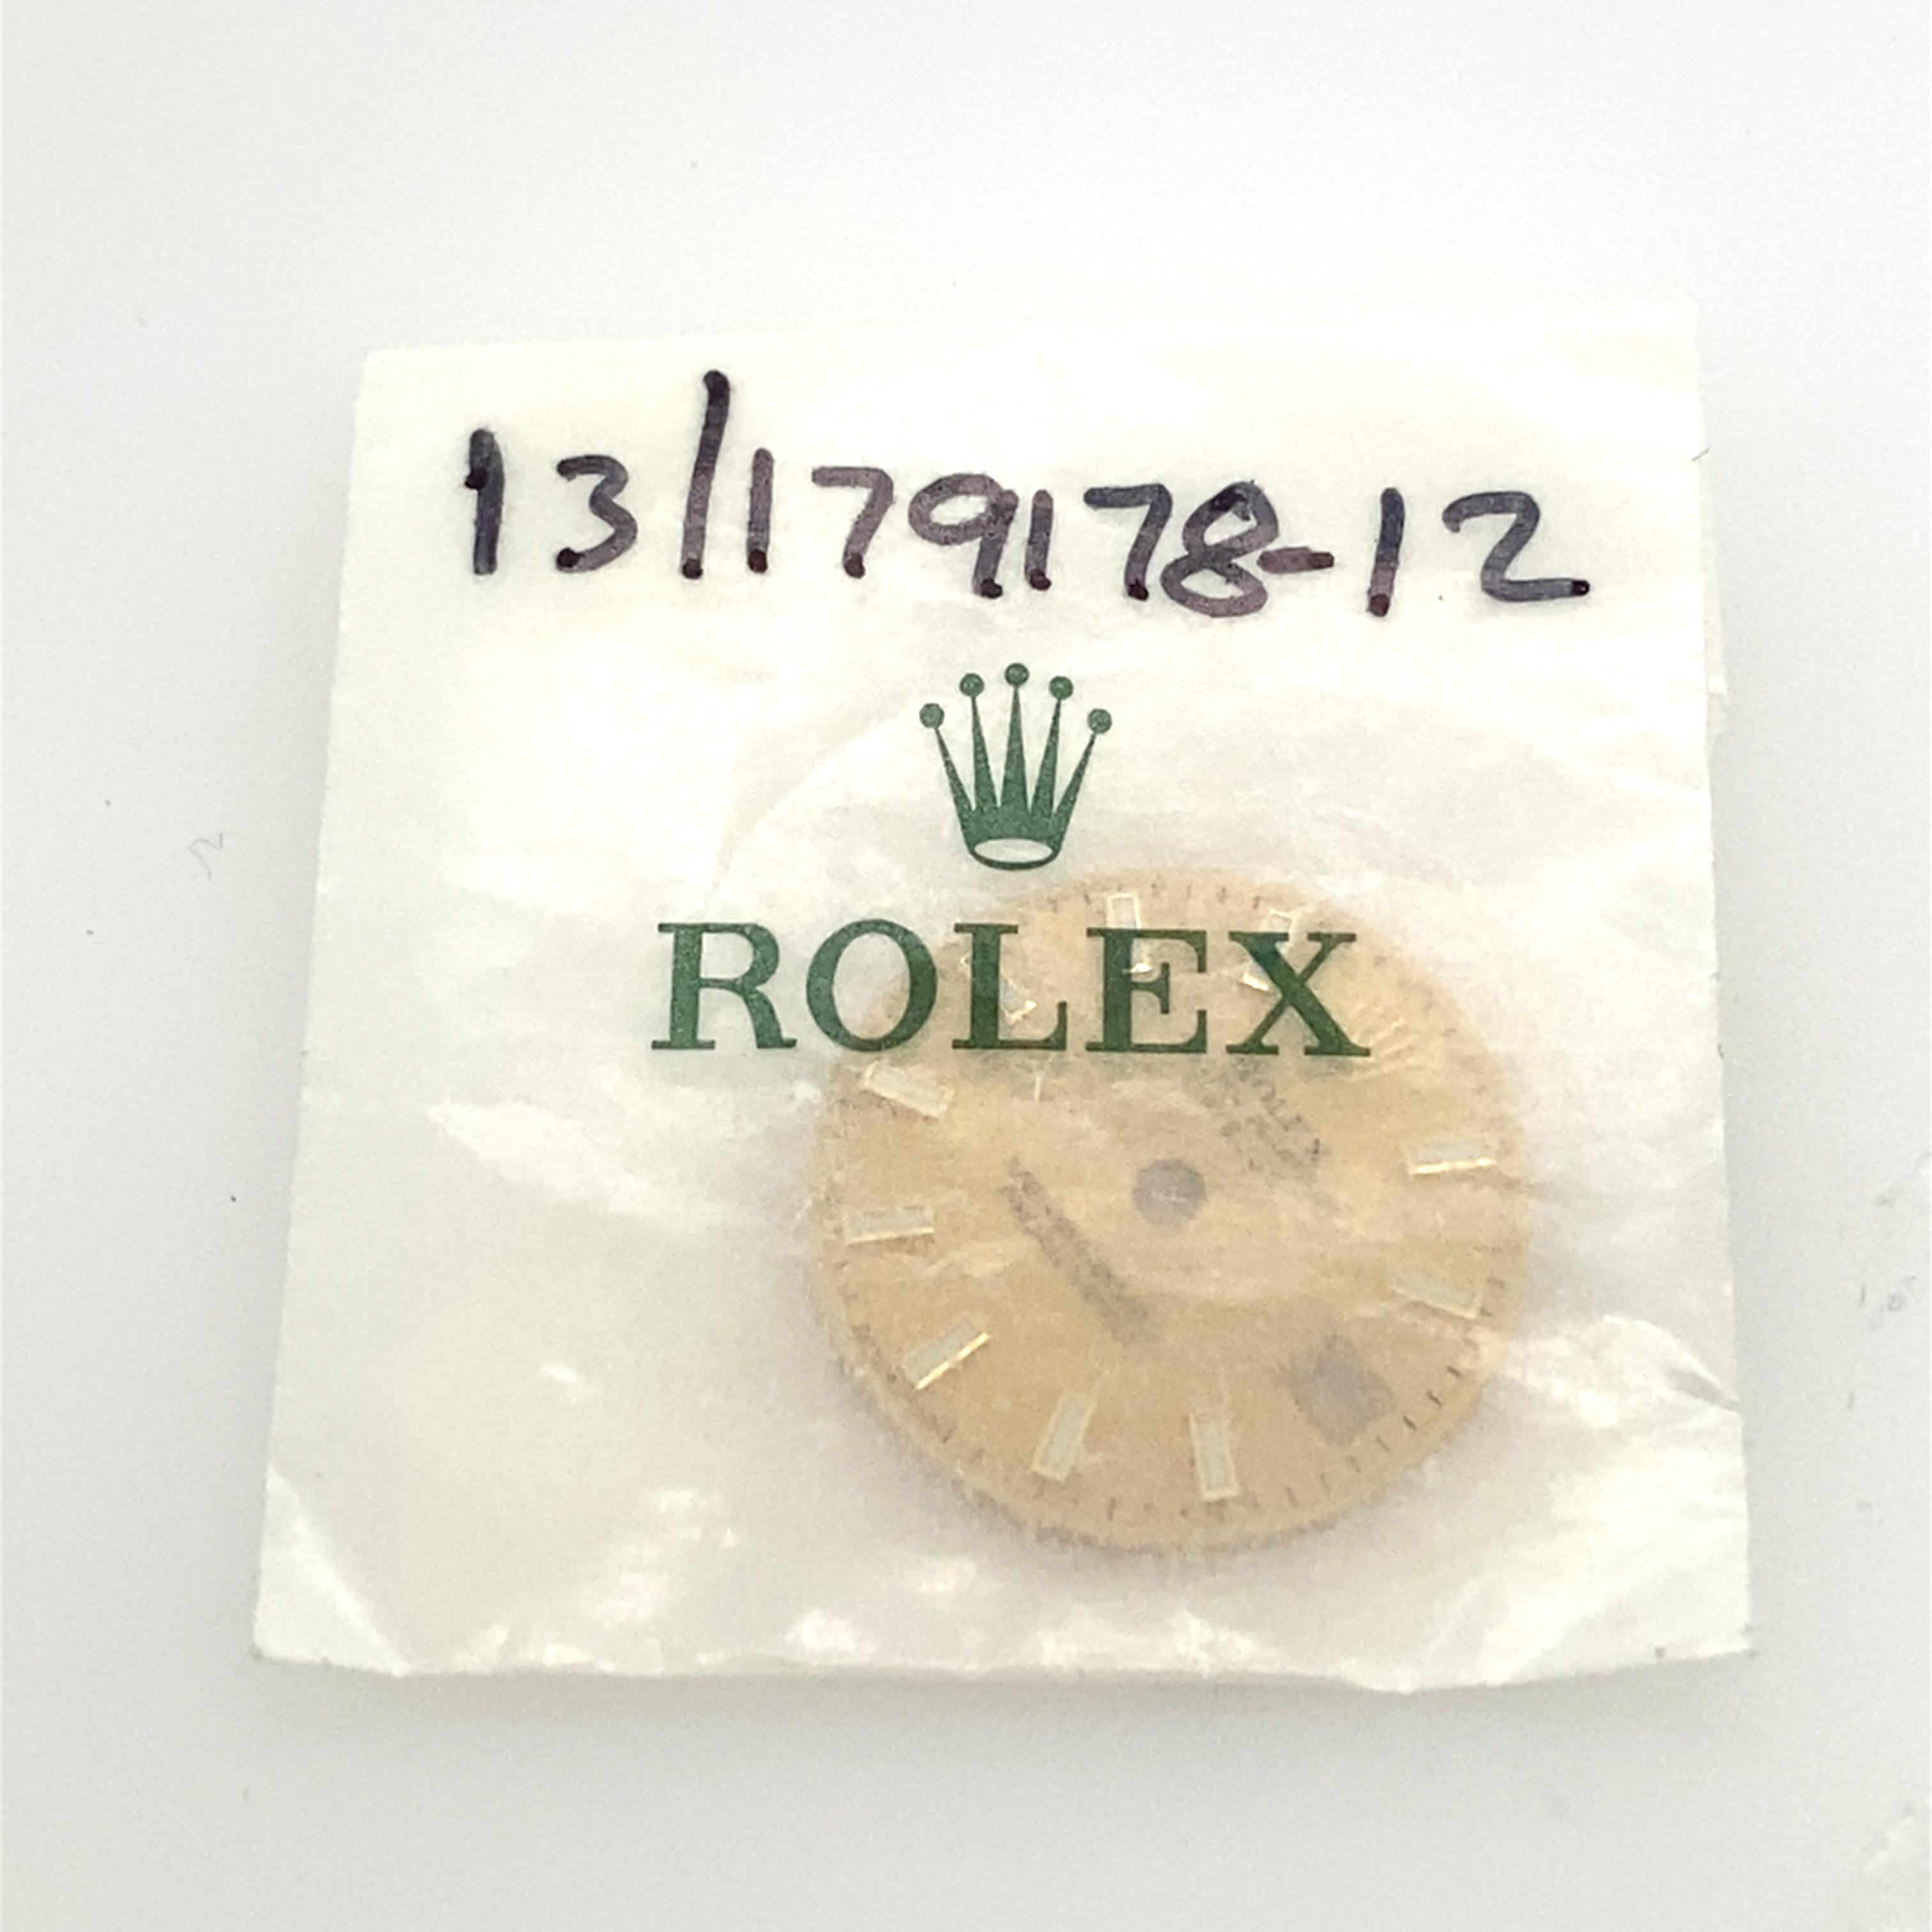 Rolex Oyster Perpetual Date juste 13/179178-12 Excellent état - En vente à London, GB